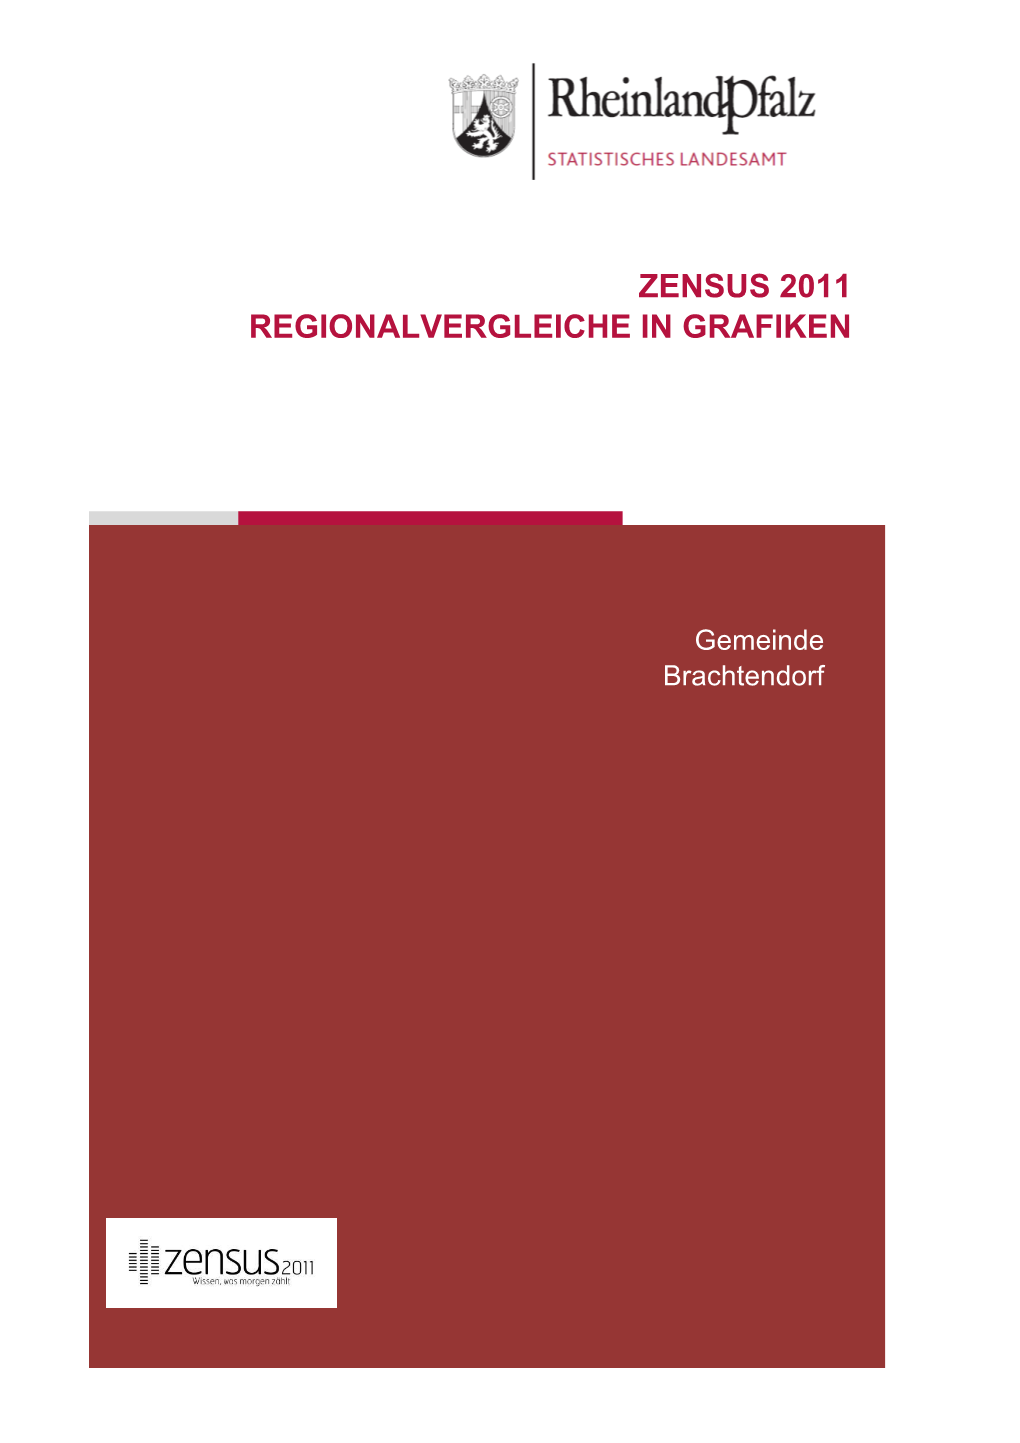 Regionalvergleiche in Grafiken Am 9. Mai 2011, Brachtendorf